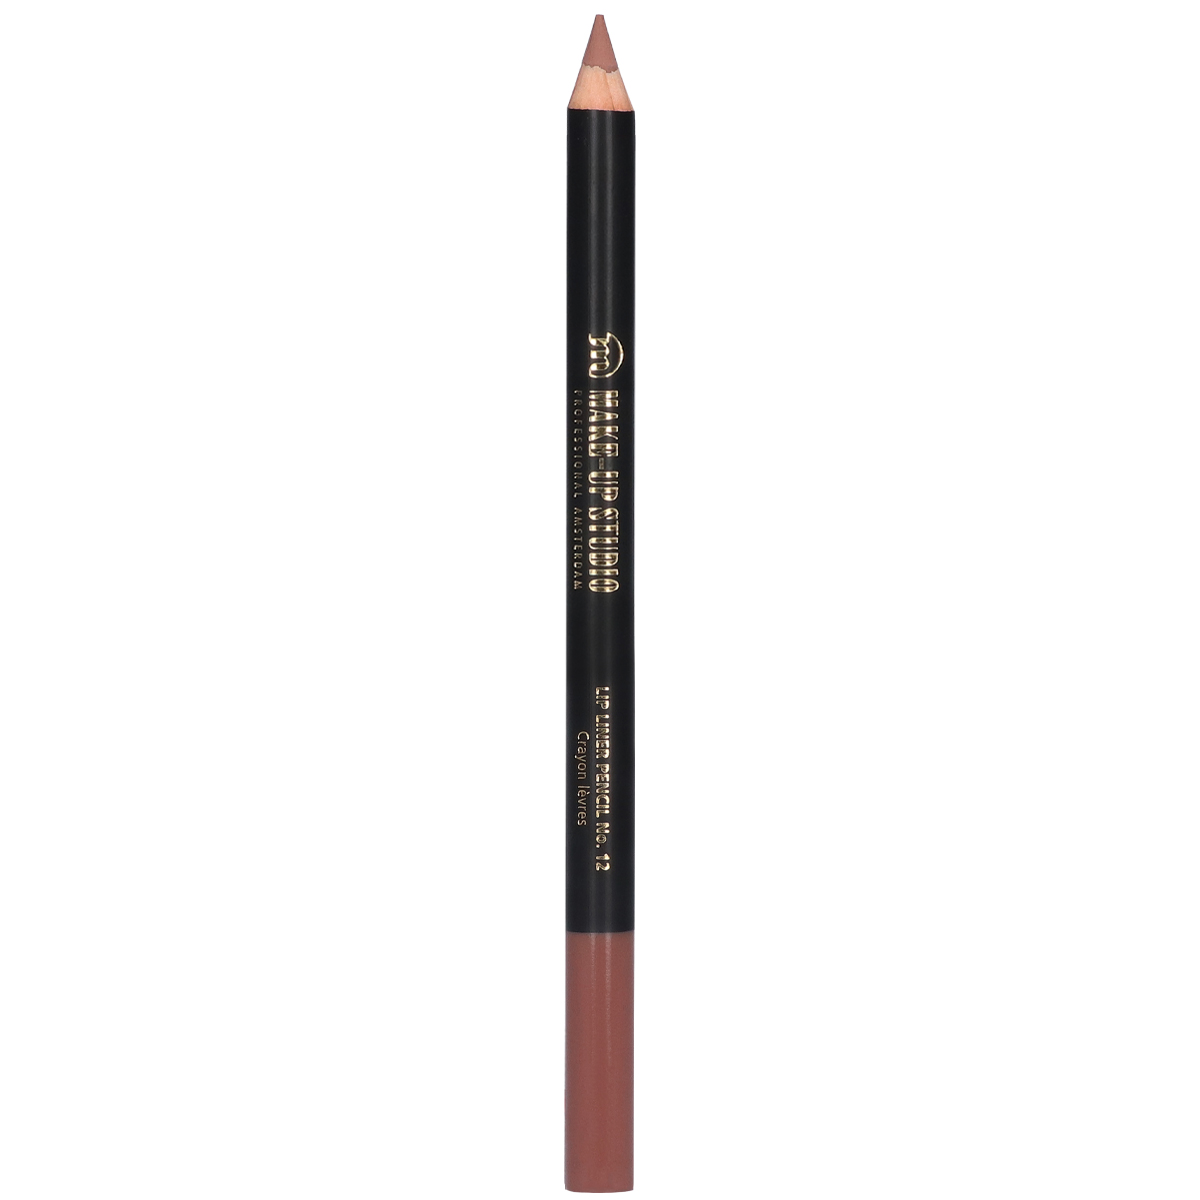 Lip Liner Pencil - 12